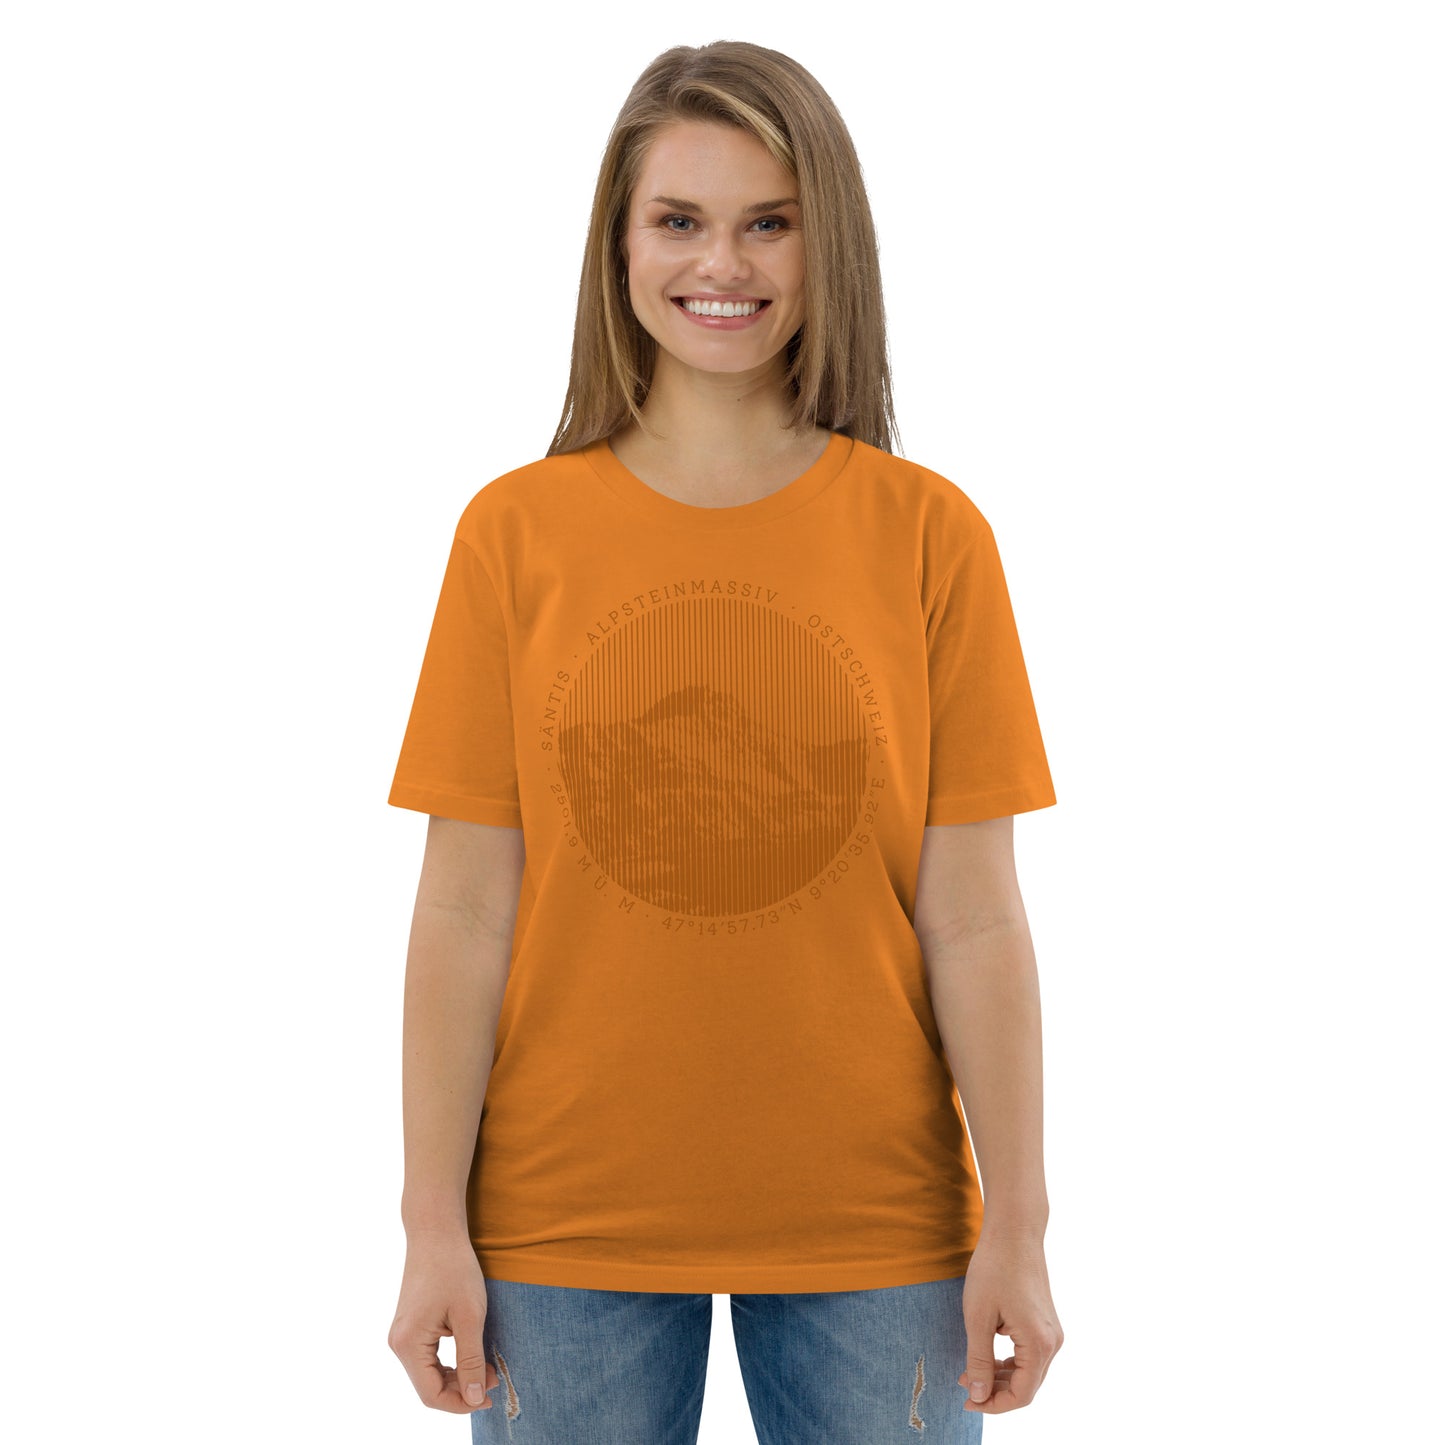 Diese Bergbegeisterte trägt ein oranges Damen T-Shirt von Vallada mit einem Aufdruck des Säntis-Gipfels. Dieses T-Shirt ist ein Statement für ihren Enthusiasmus für diesen Berg in den Appenzeller Alpen.